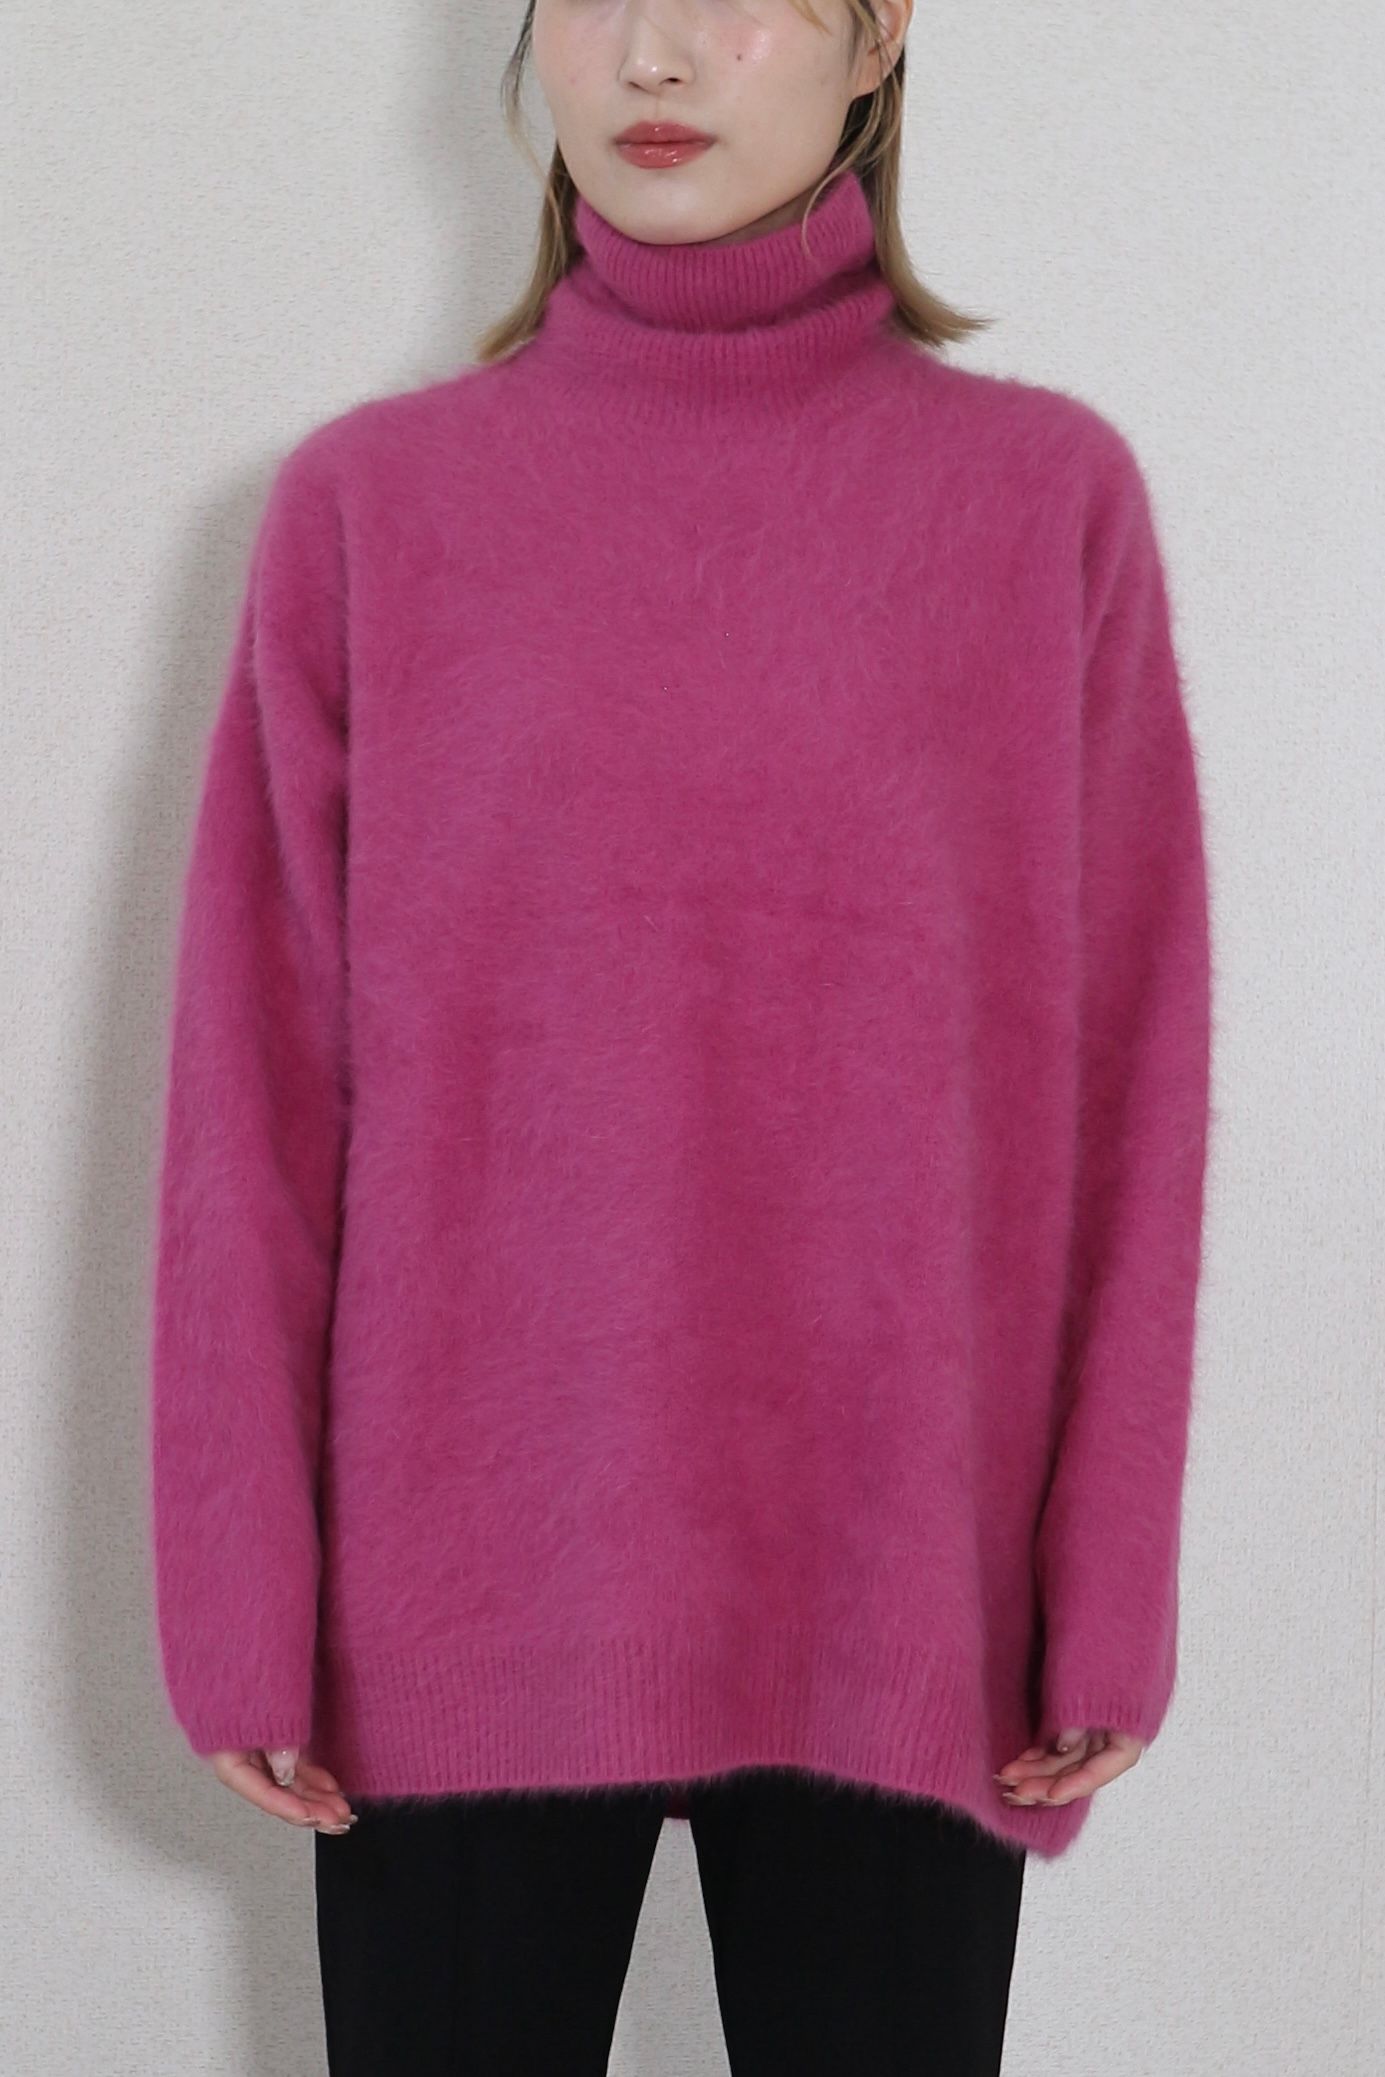 一度外出で着たことがありますKNWLS cali セーター ニットウェア　ピンク